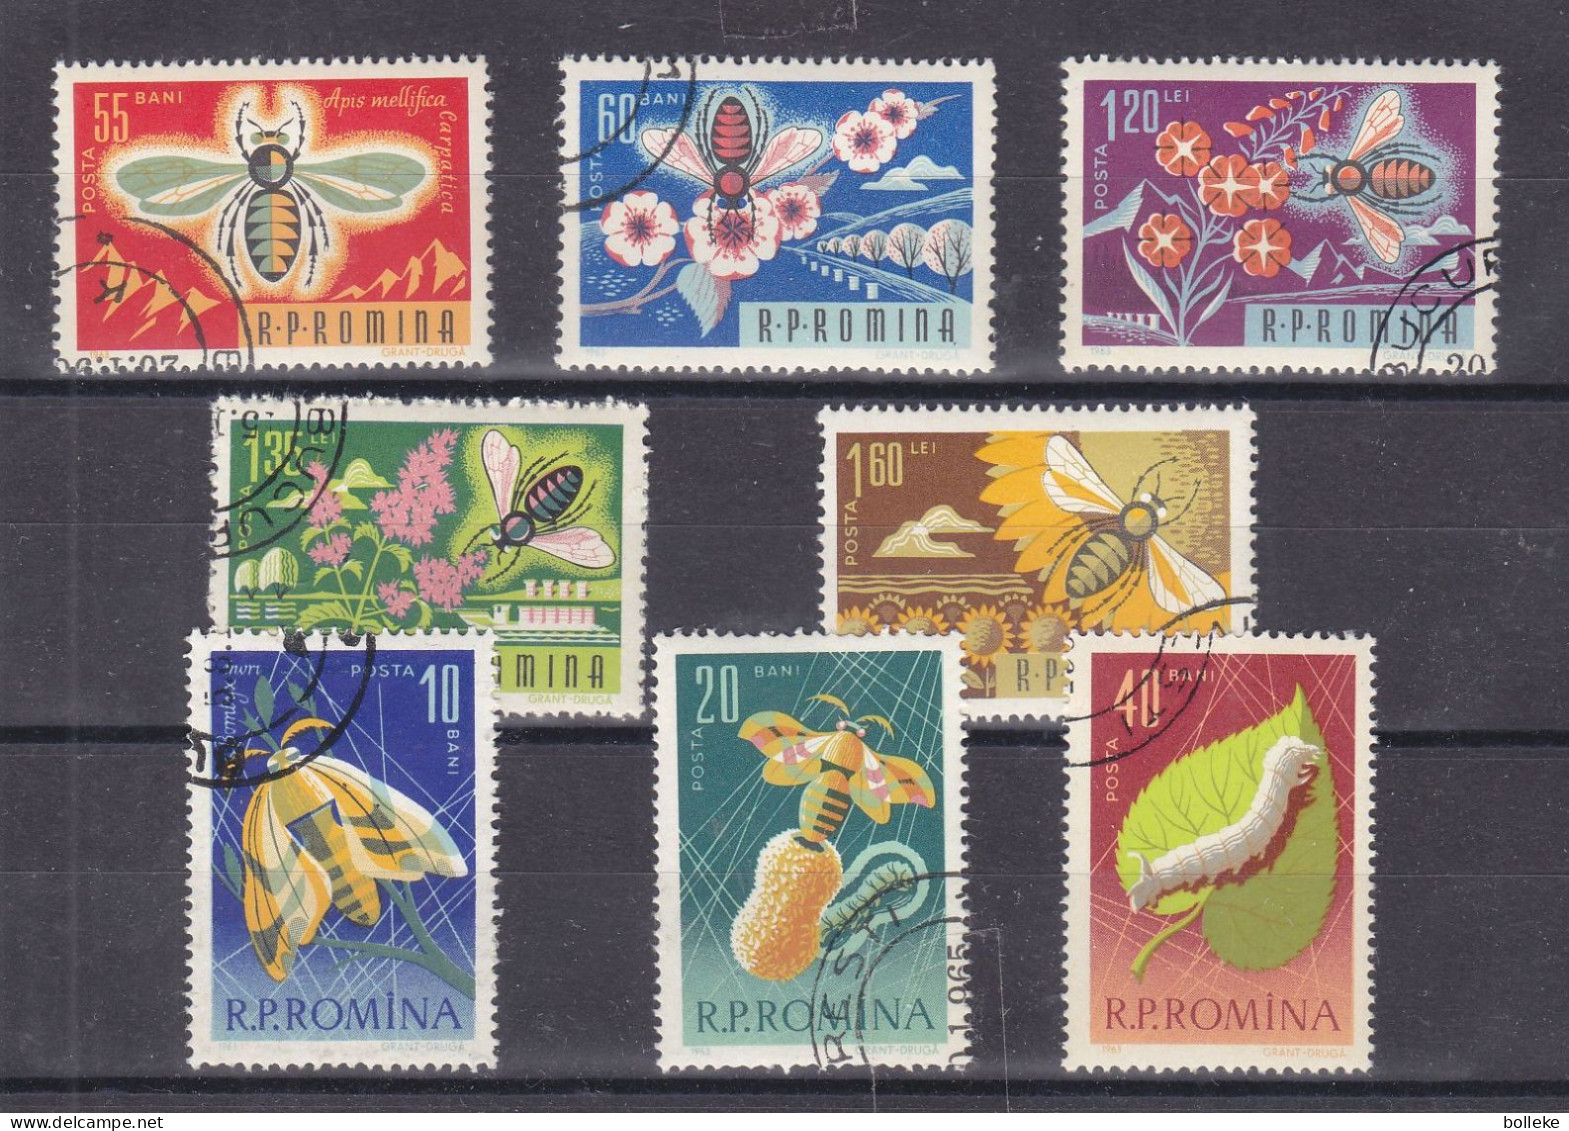 Abeilles - Roumanie - Yvert 1944 / 51 Oblitéré - Valeur 2,50 Euros - Honeybees